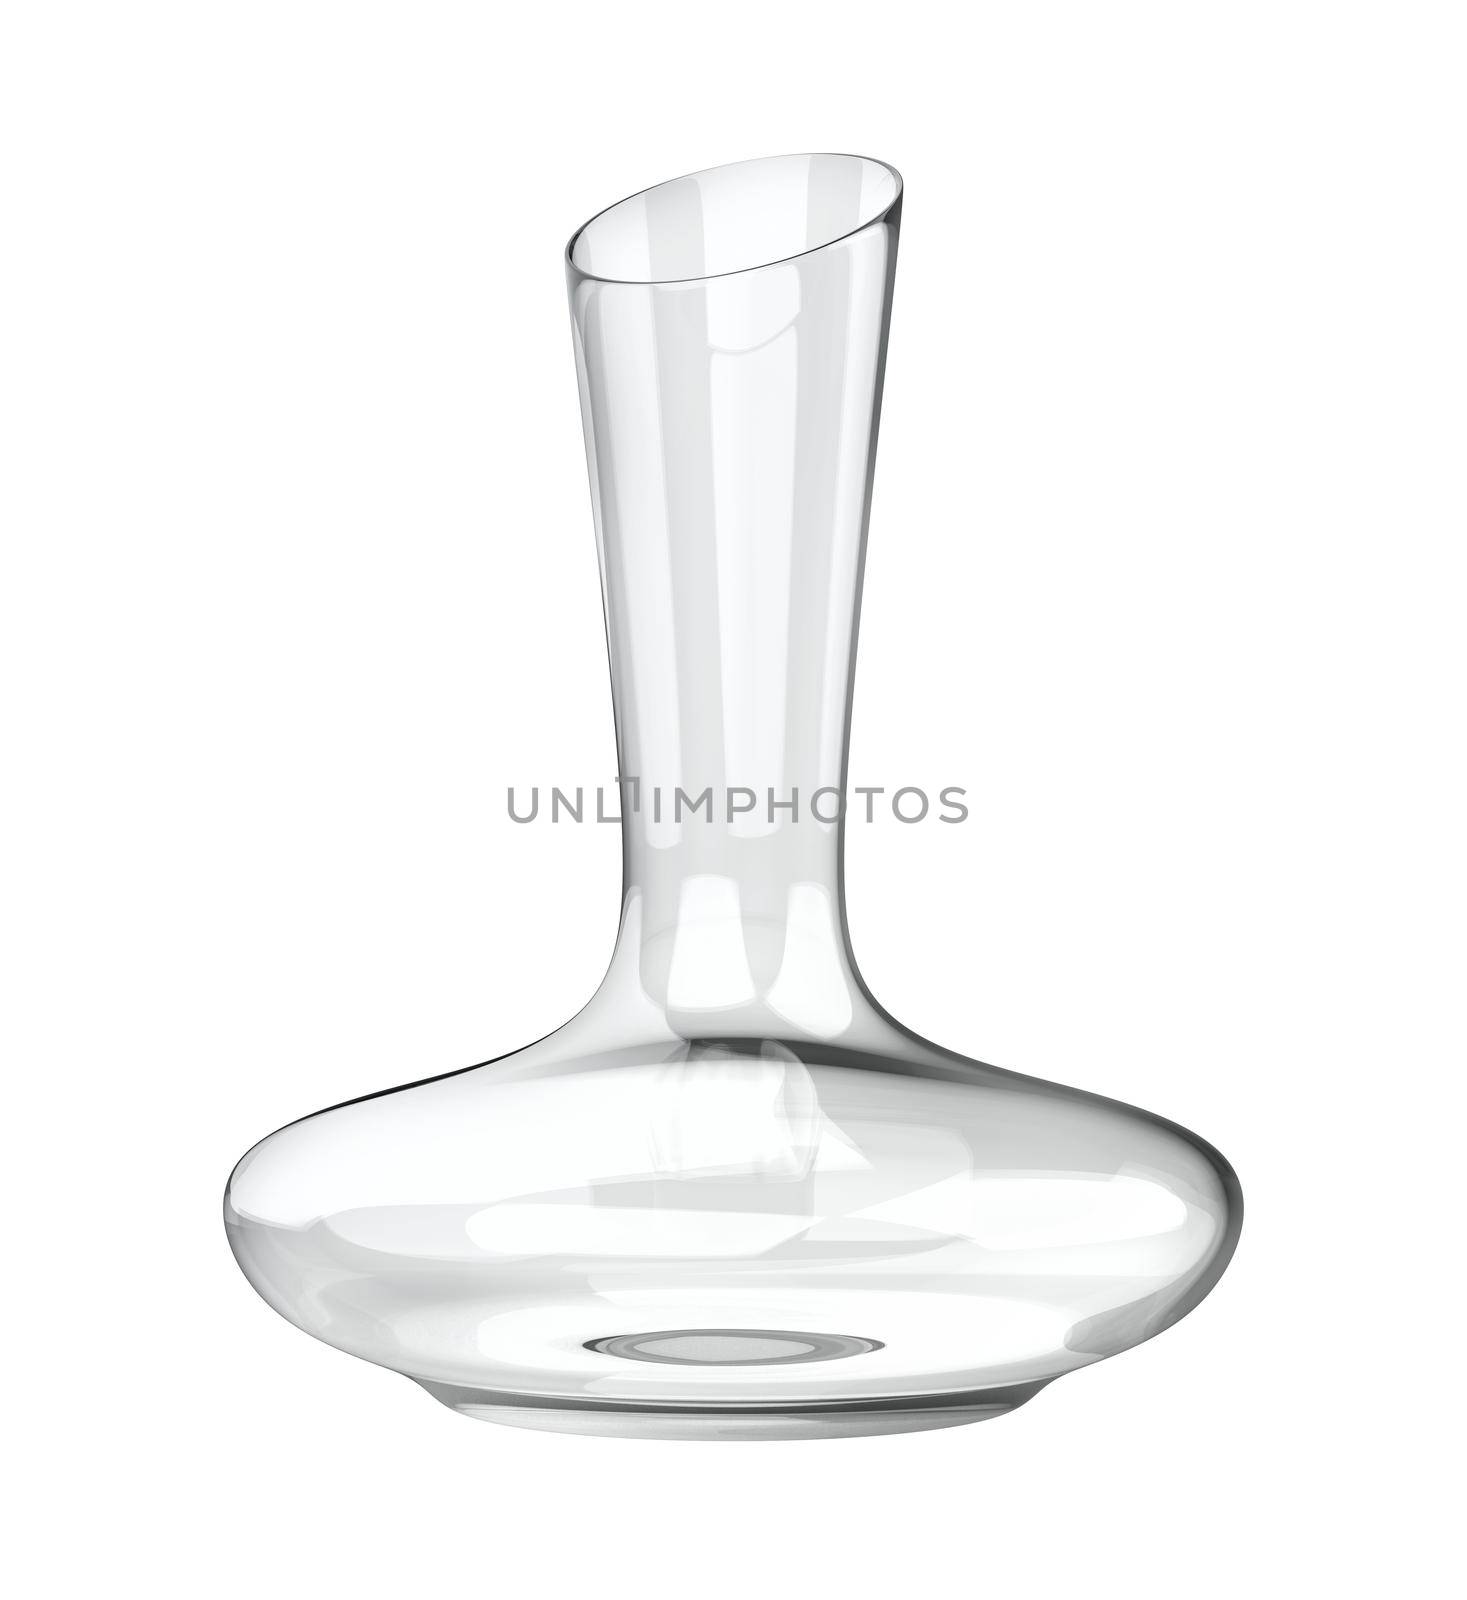 Empty elegant wine decanter isolated on white background